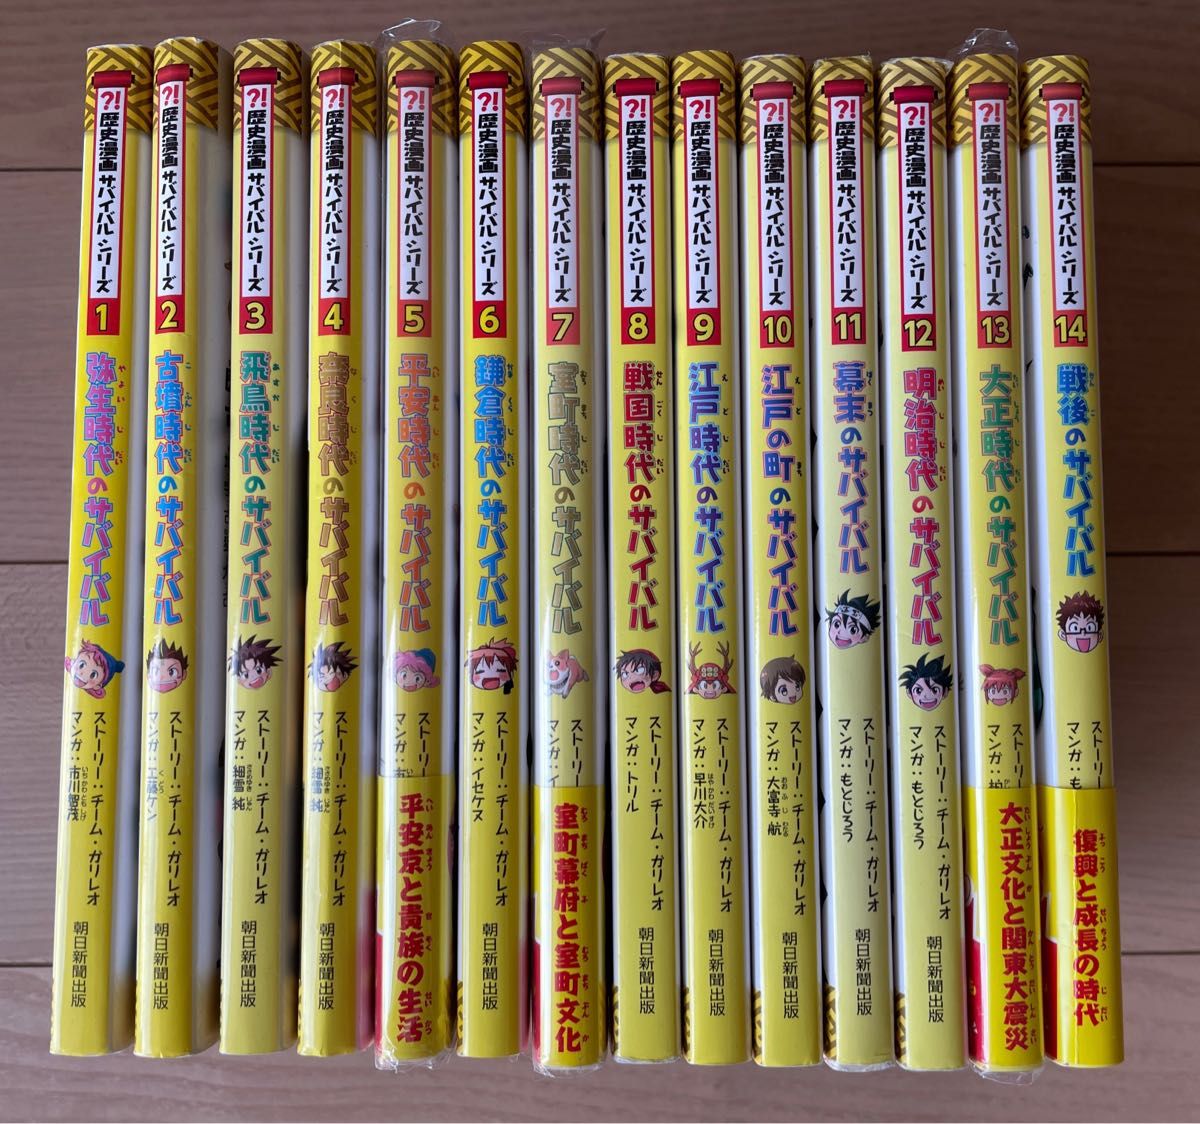 歴史漫画 タイムワープシリーズ 通史編 全14巻BOX セット 特典付き